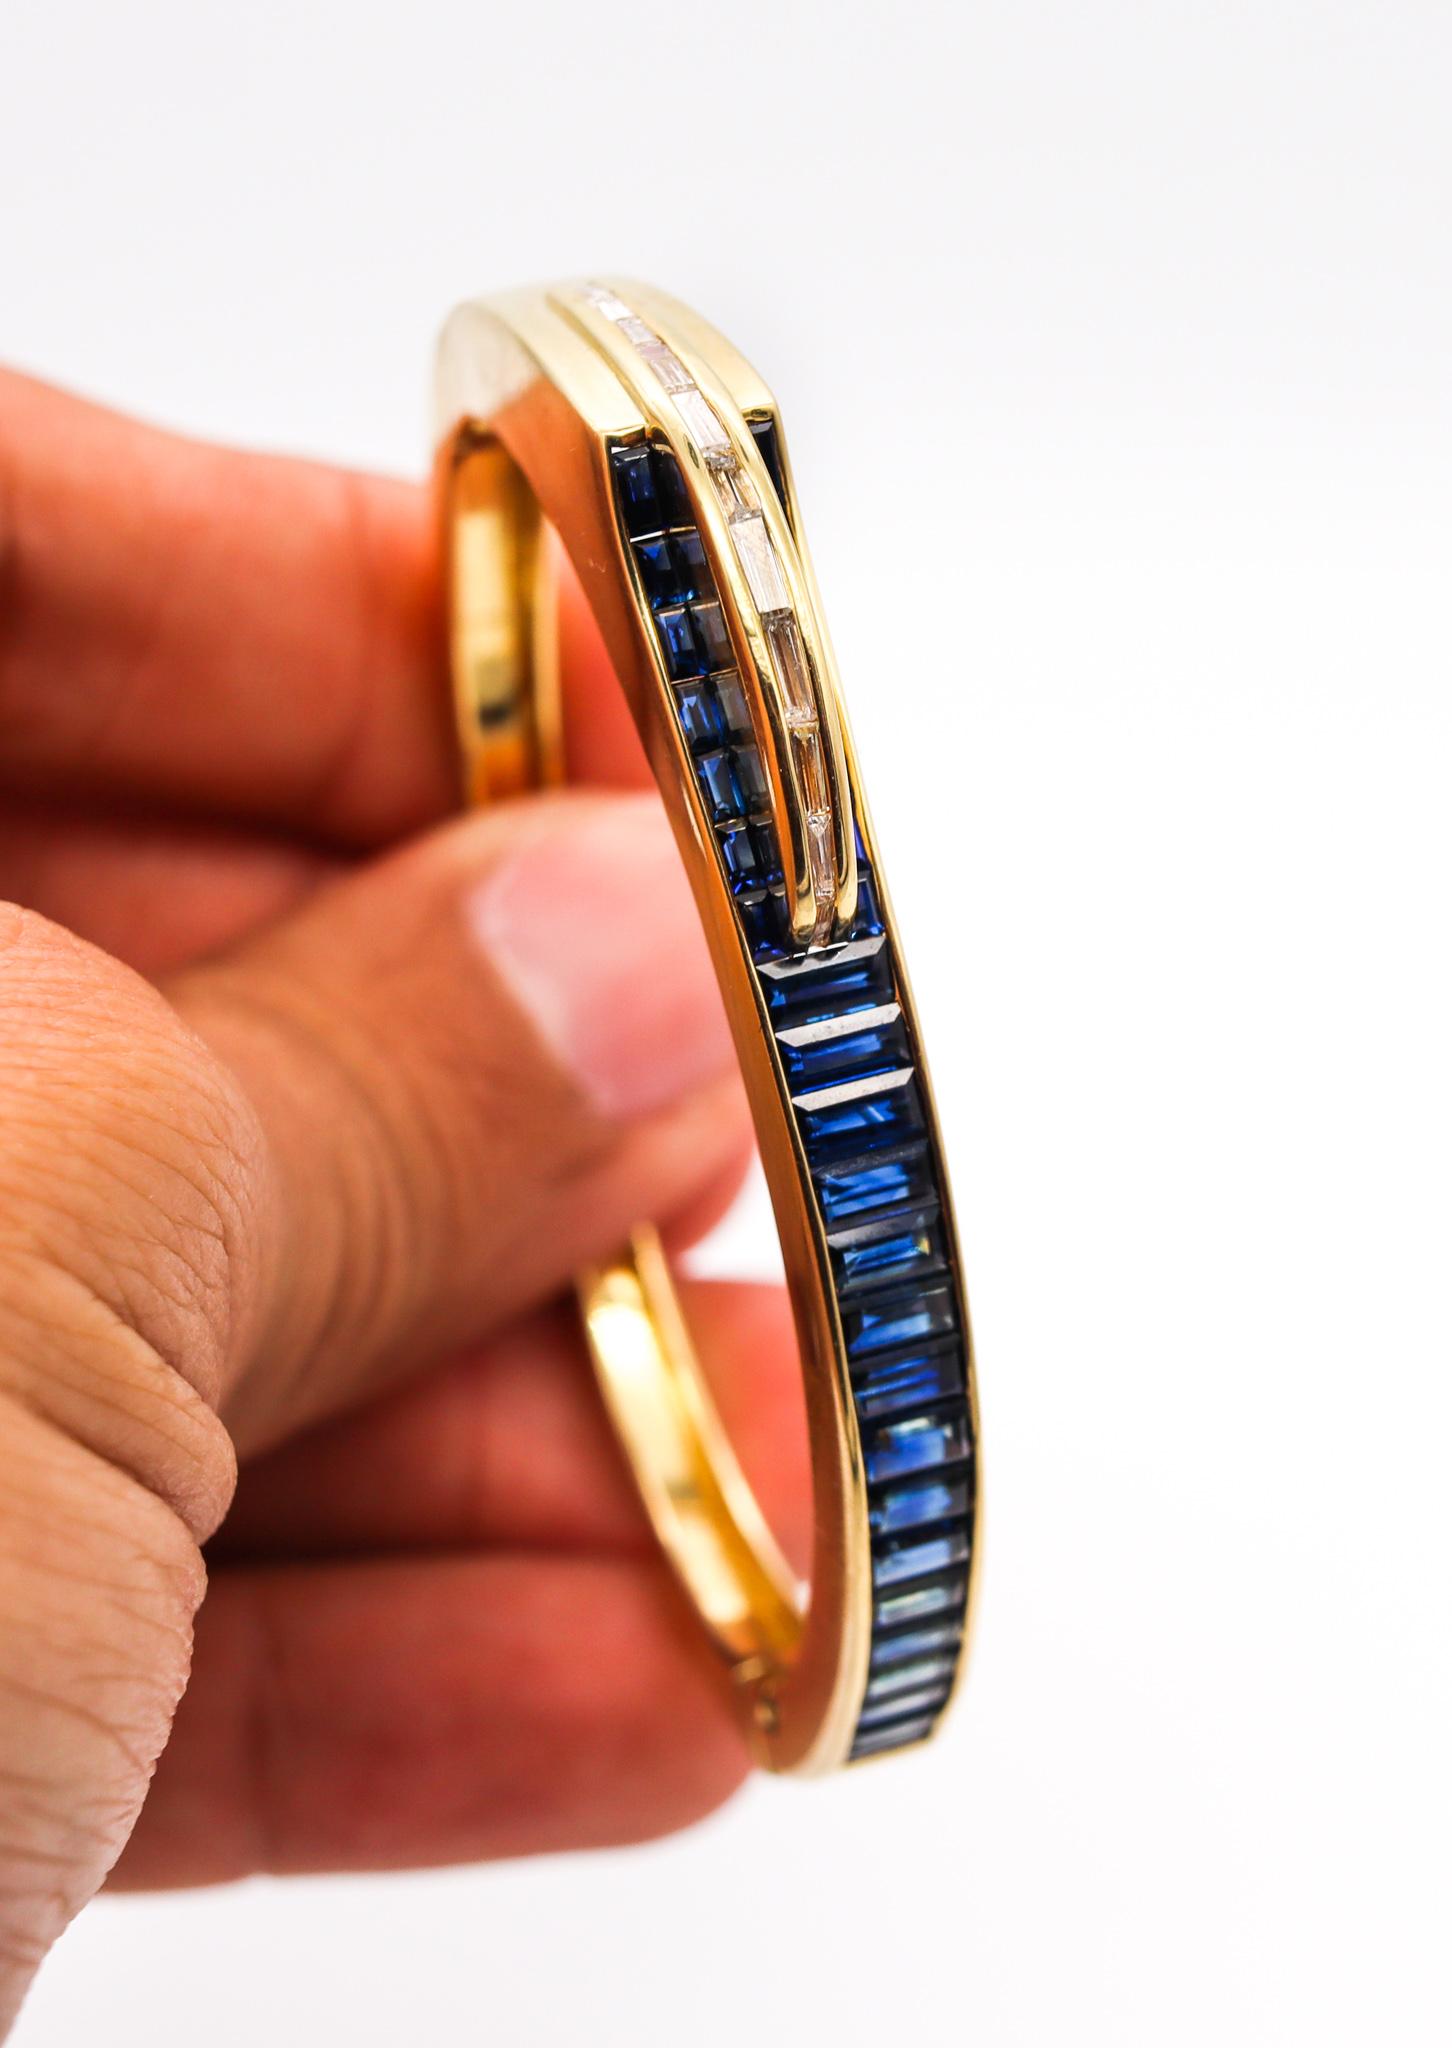 Gubelin Swiss 1970 Geometric Modernist Bracelet in 18Kt Gold 8.71 Cts Gemstones For Sale 5